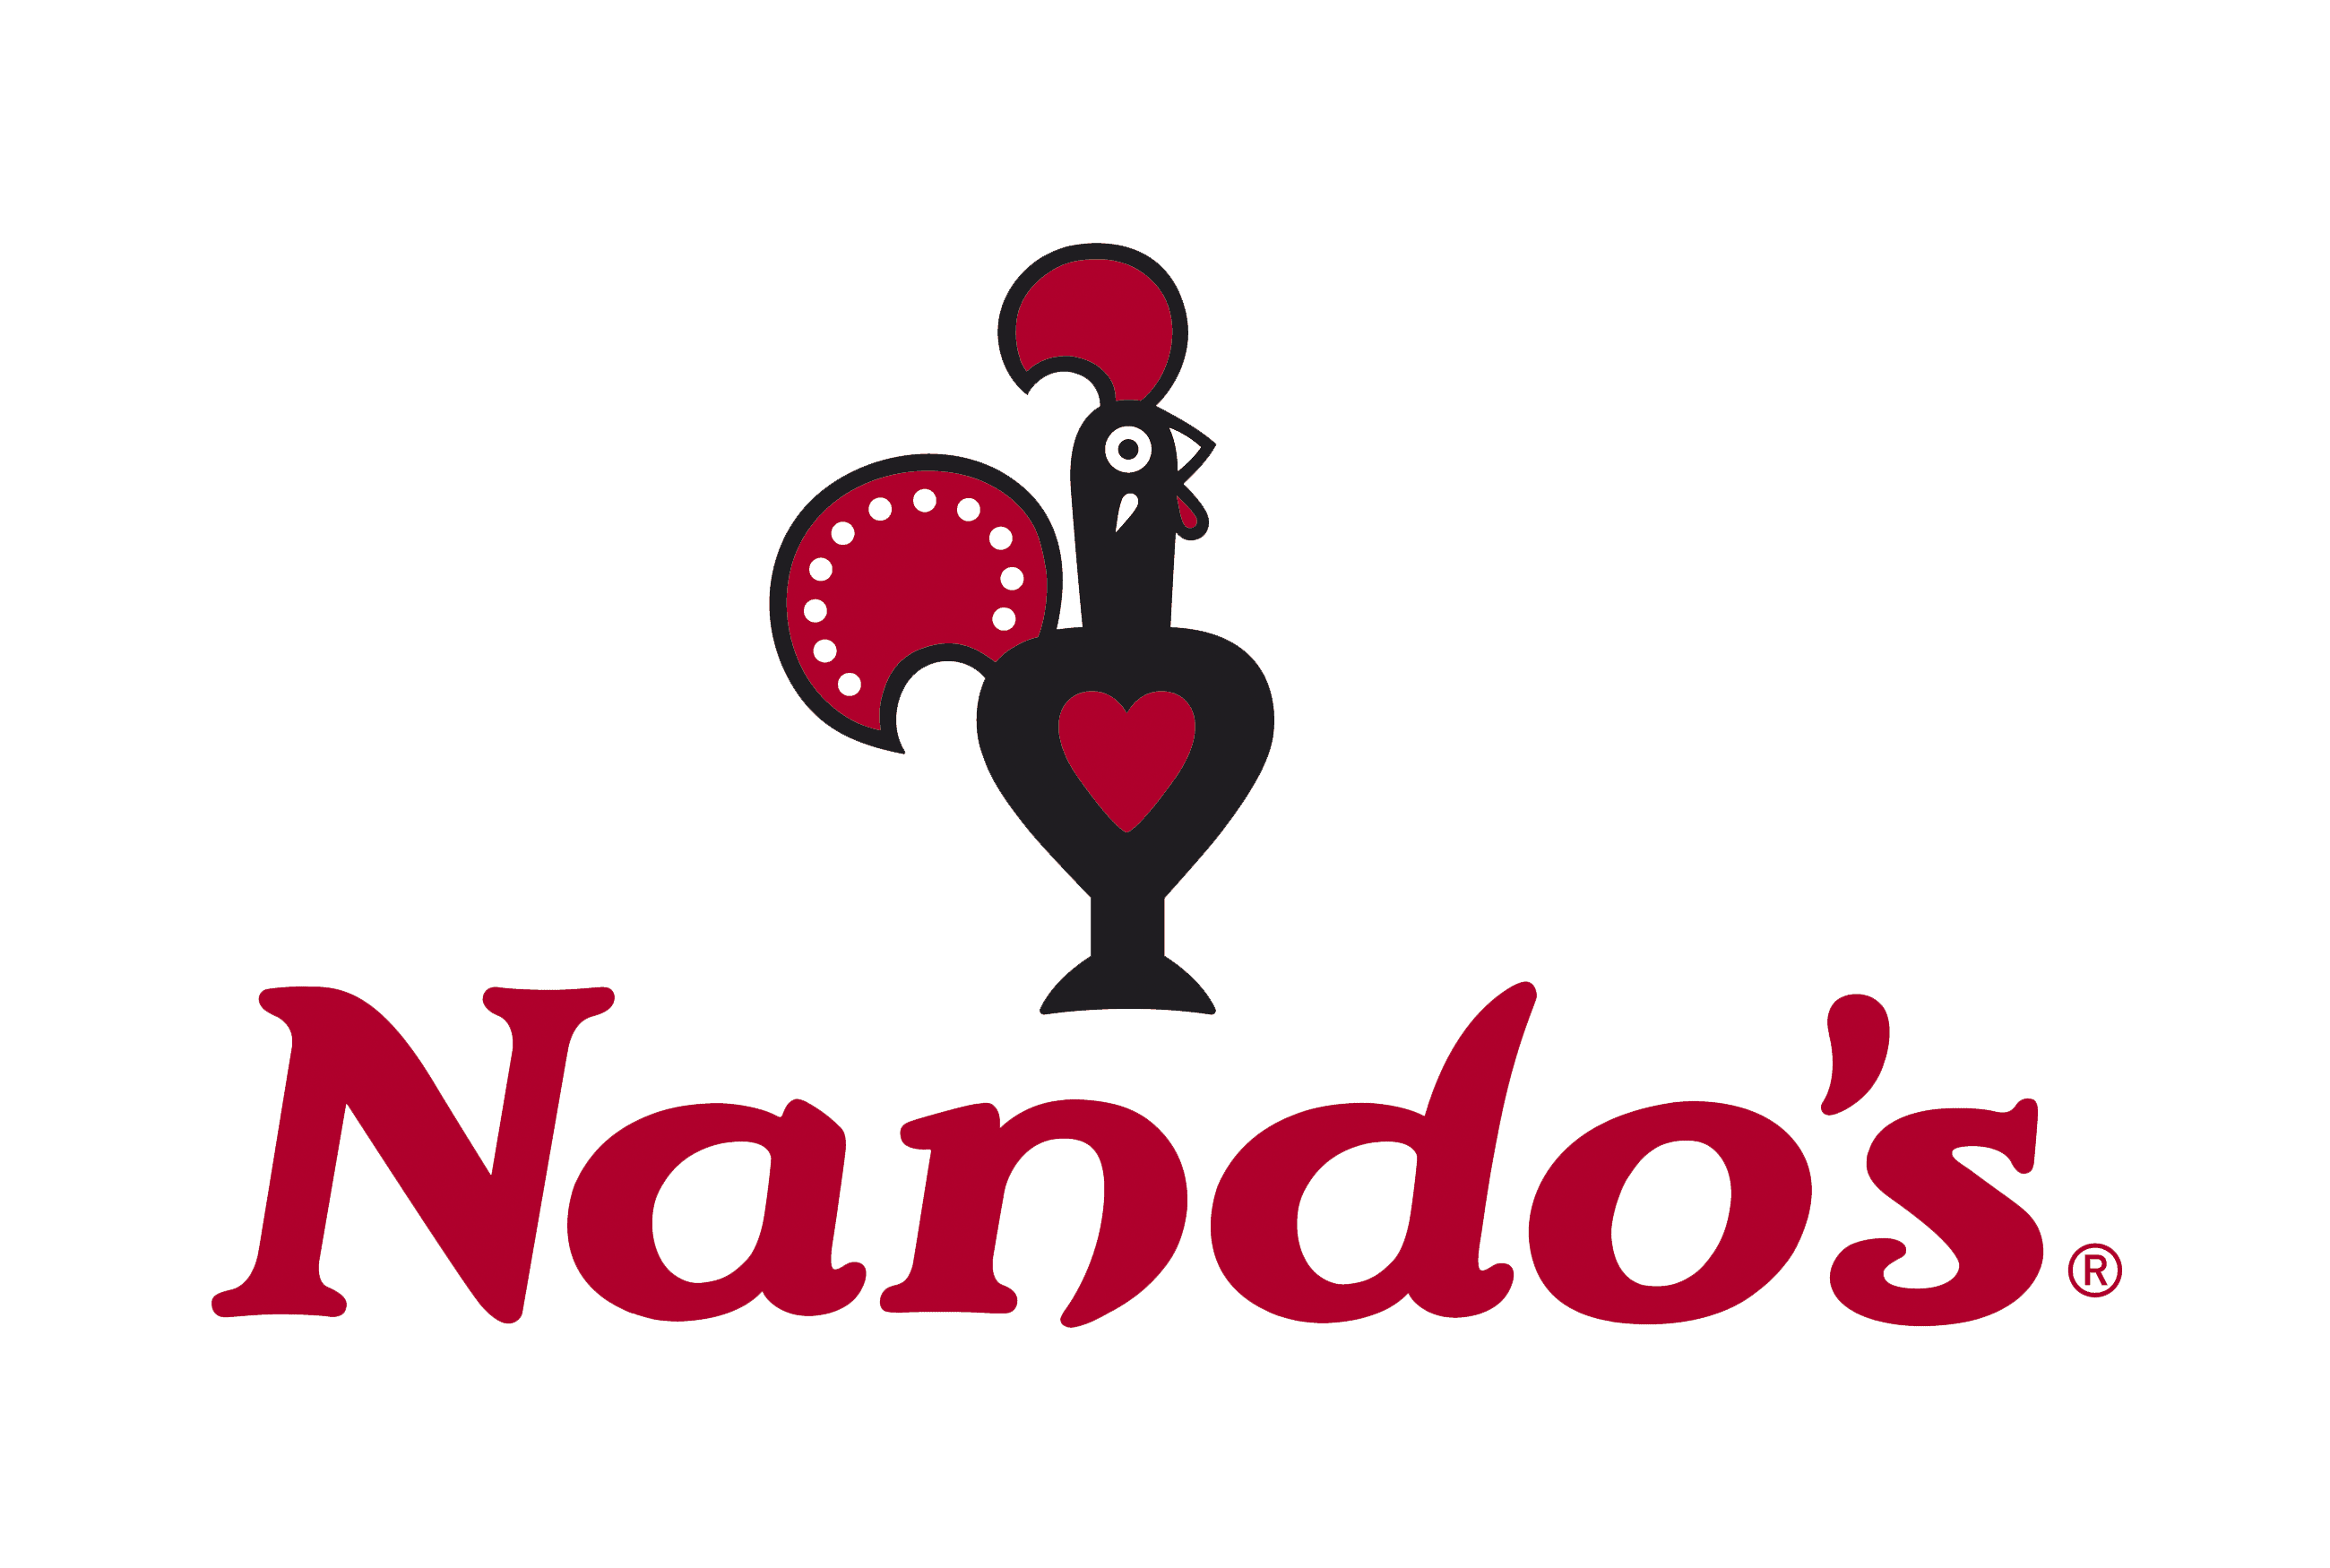 Nandos Offers